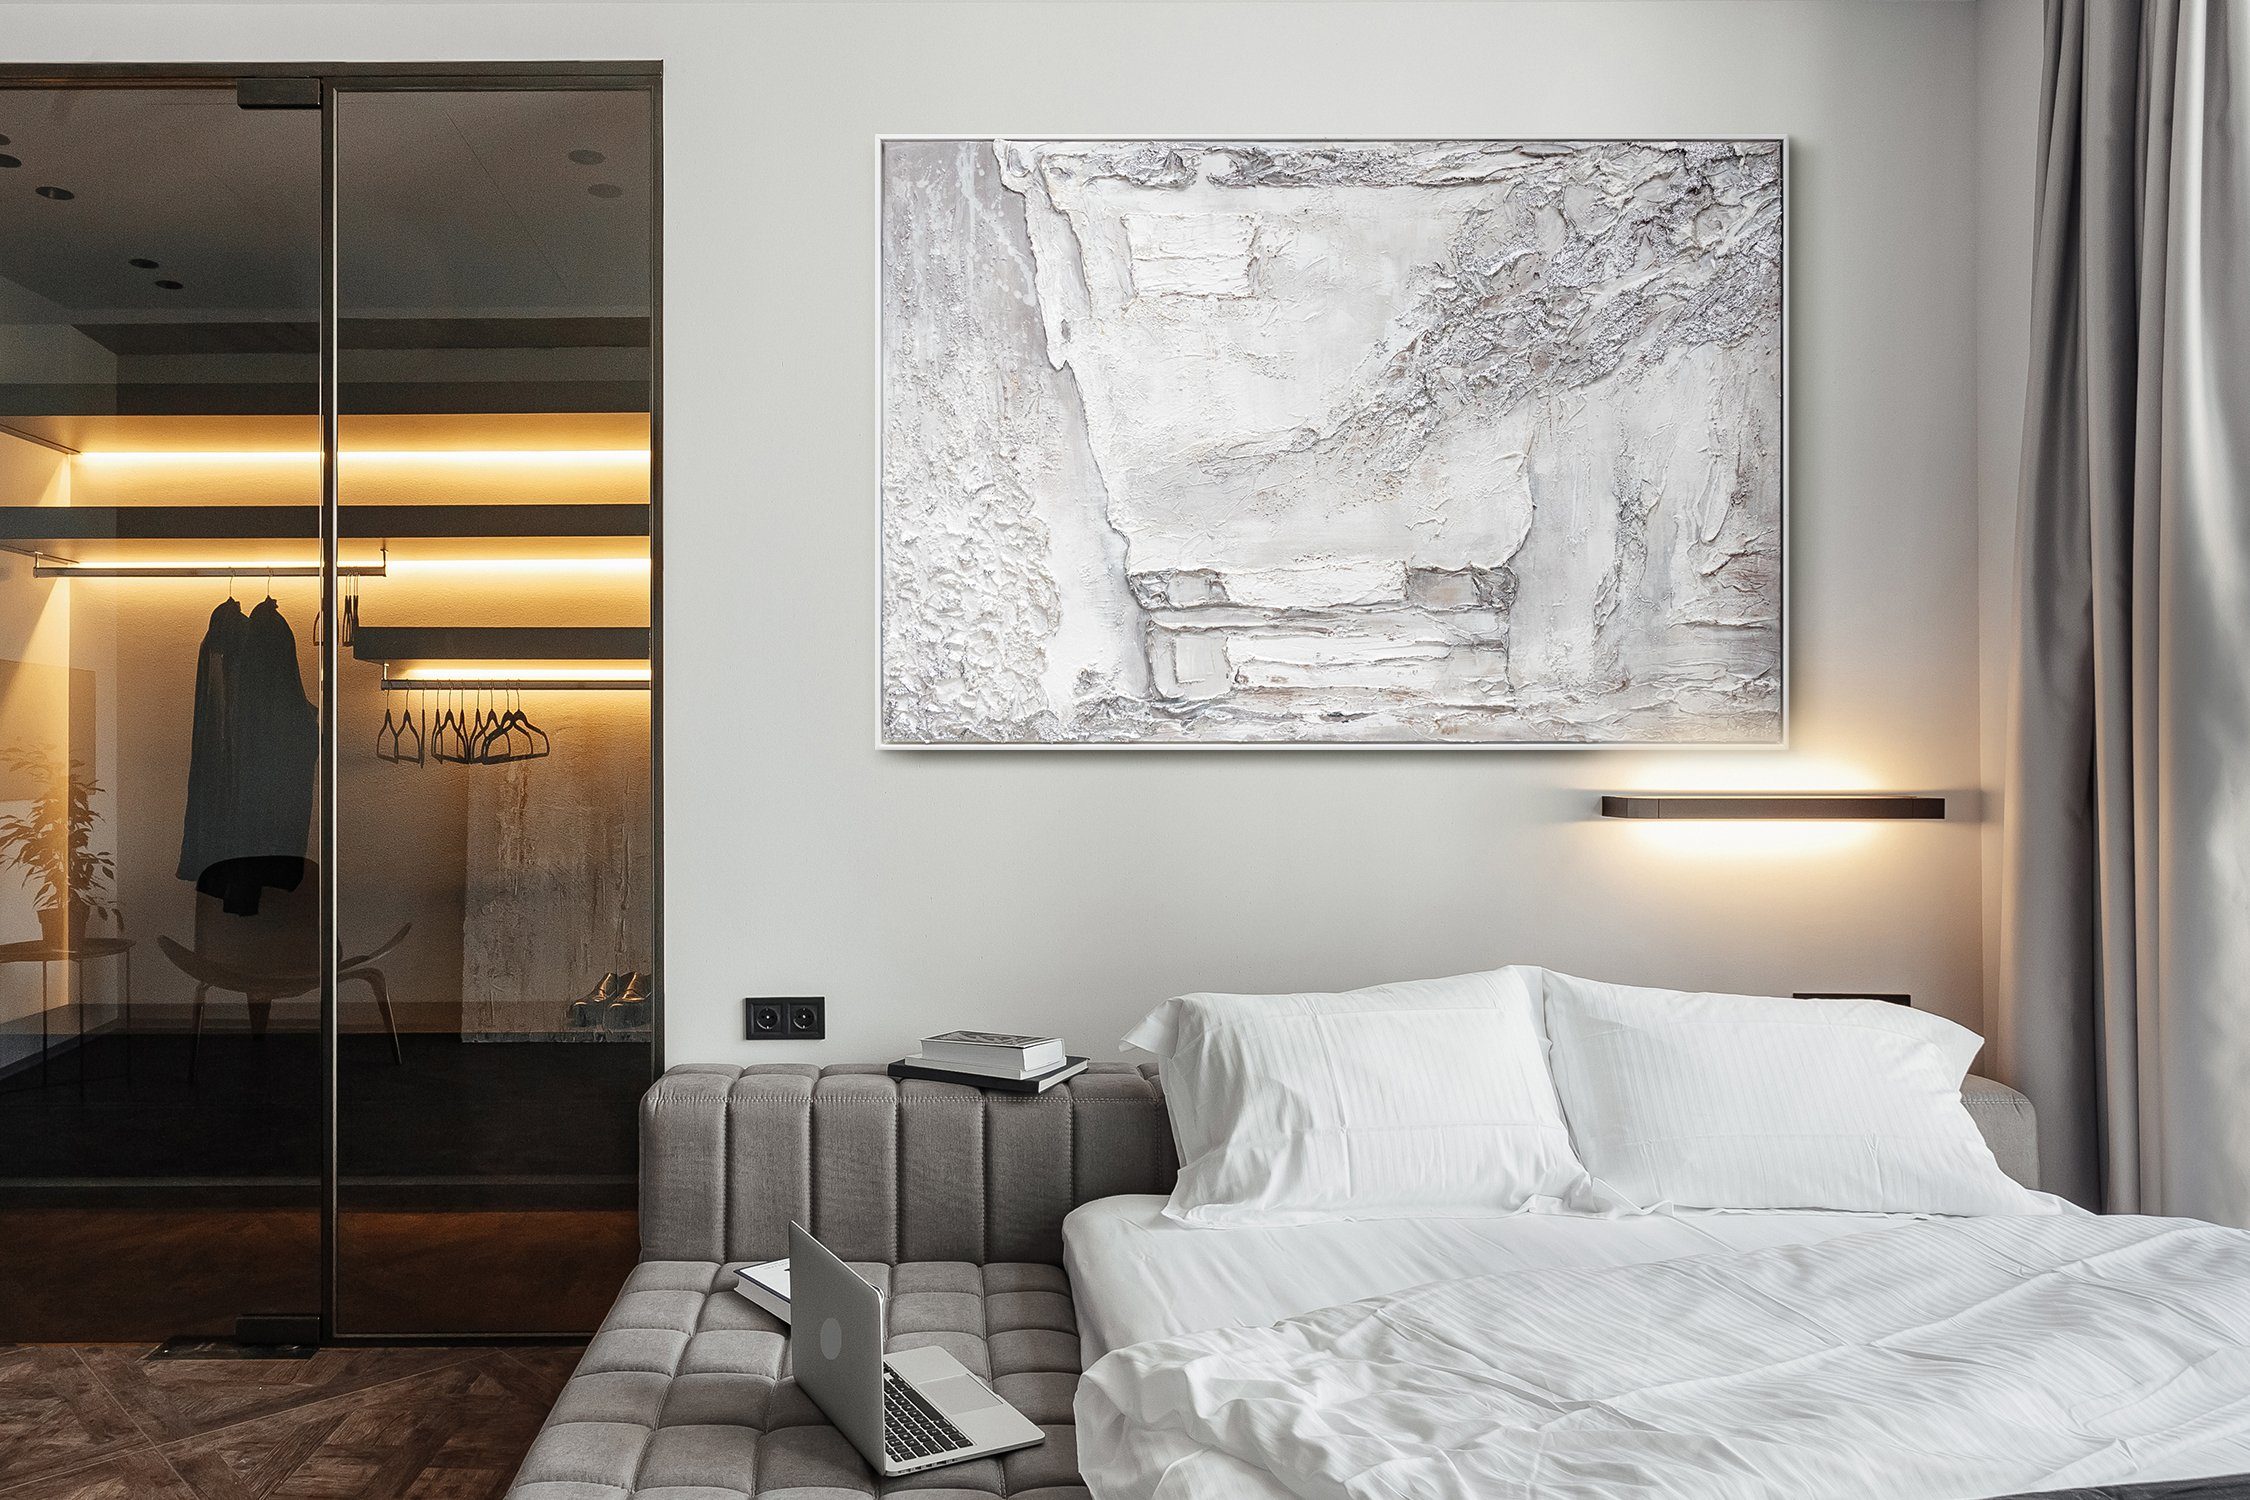 Helles Leinwand mit mit Rahmen Handgemalt YS-Art Gemälde Silber licht, Struktur Abstrakt Bild